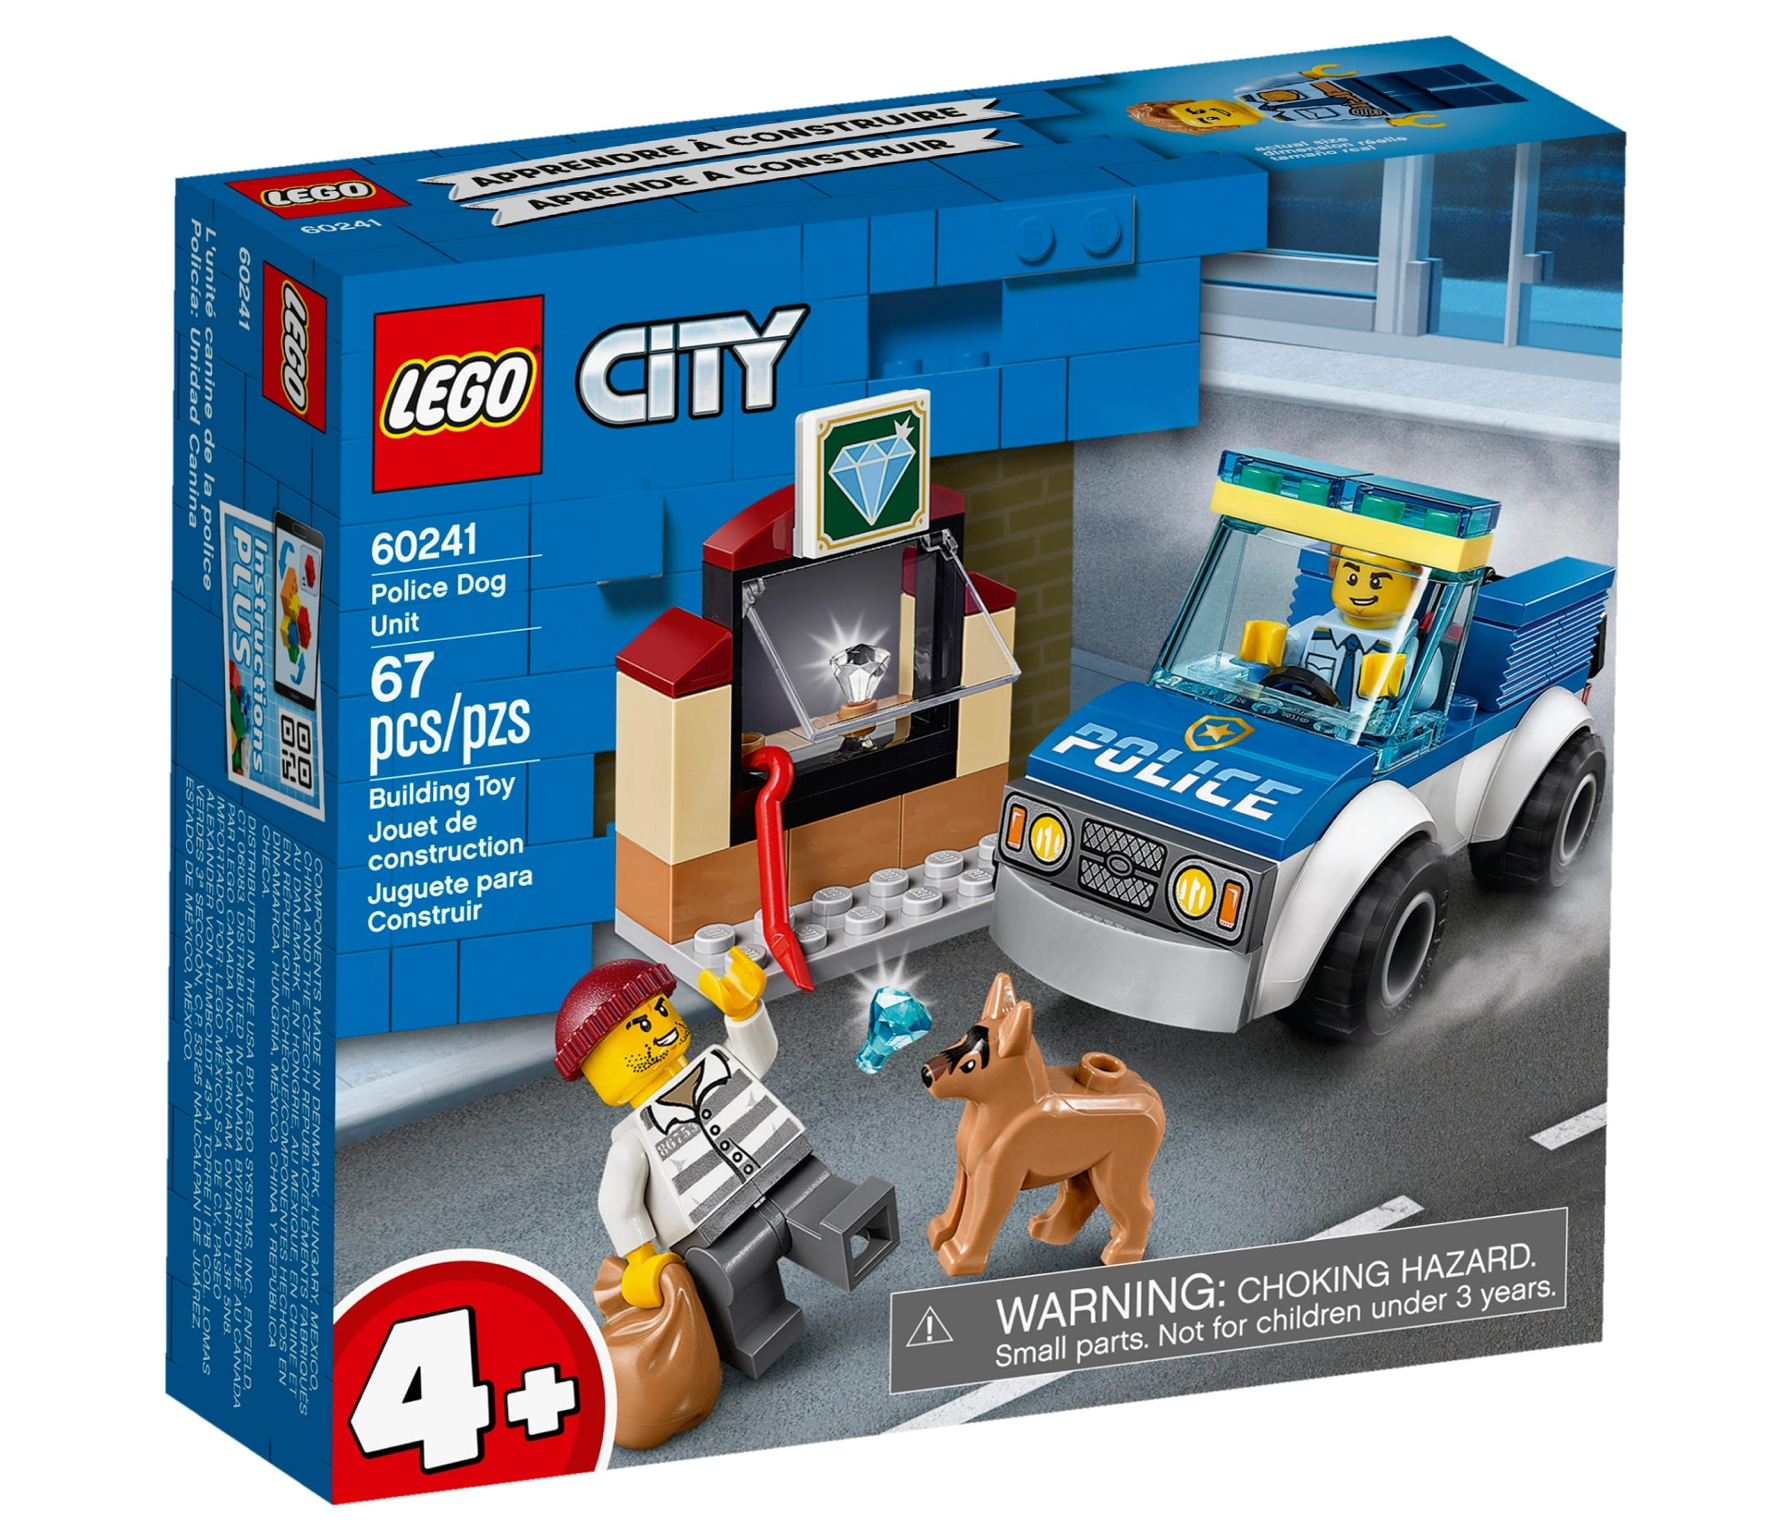 LEGO: City - Police Dog Unit